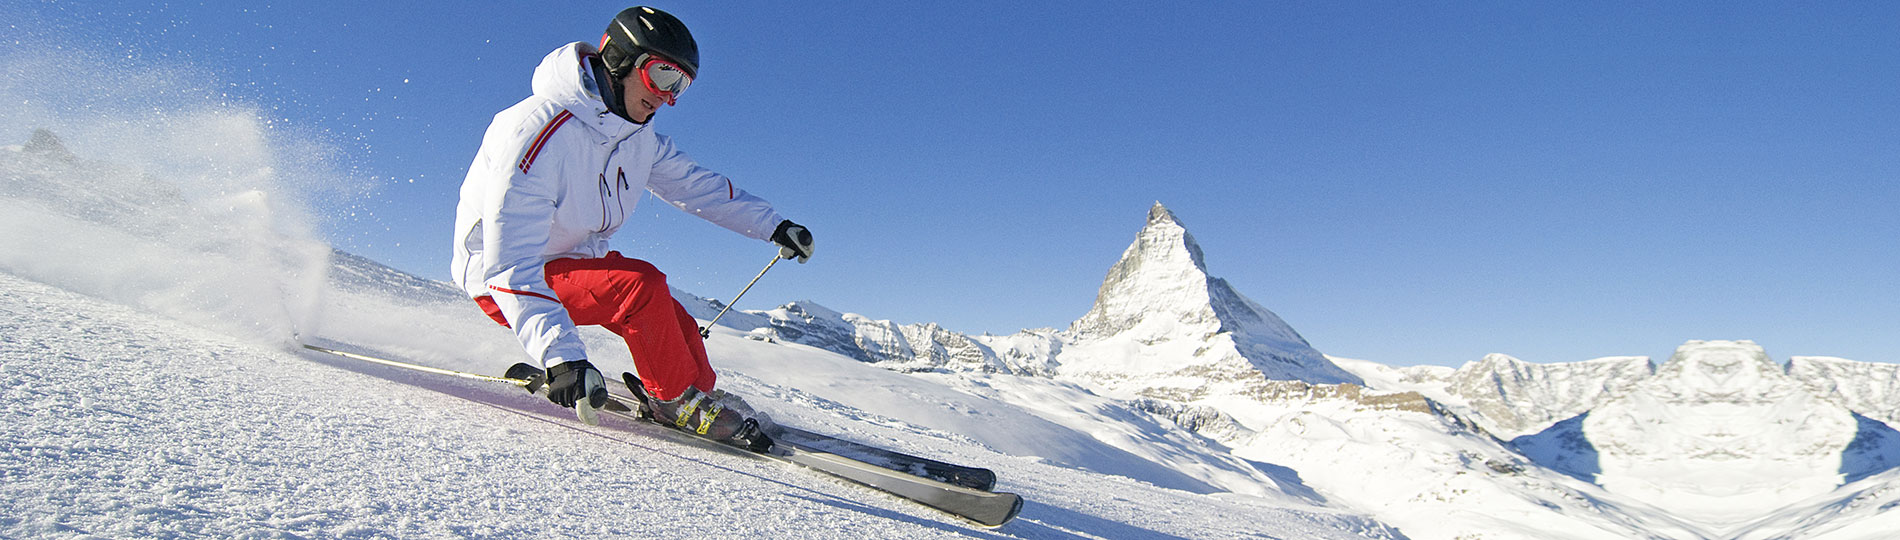 Technikás síelő siklik le a hegyen - Utasbiztosítás téli sportokhoz